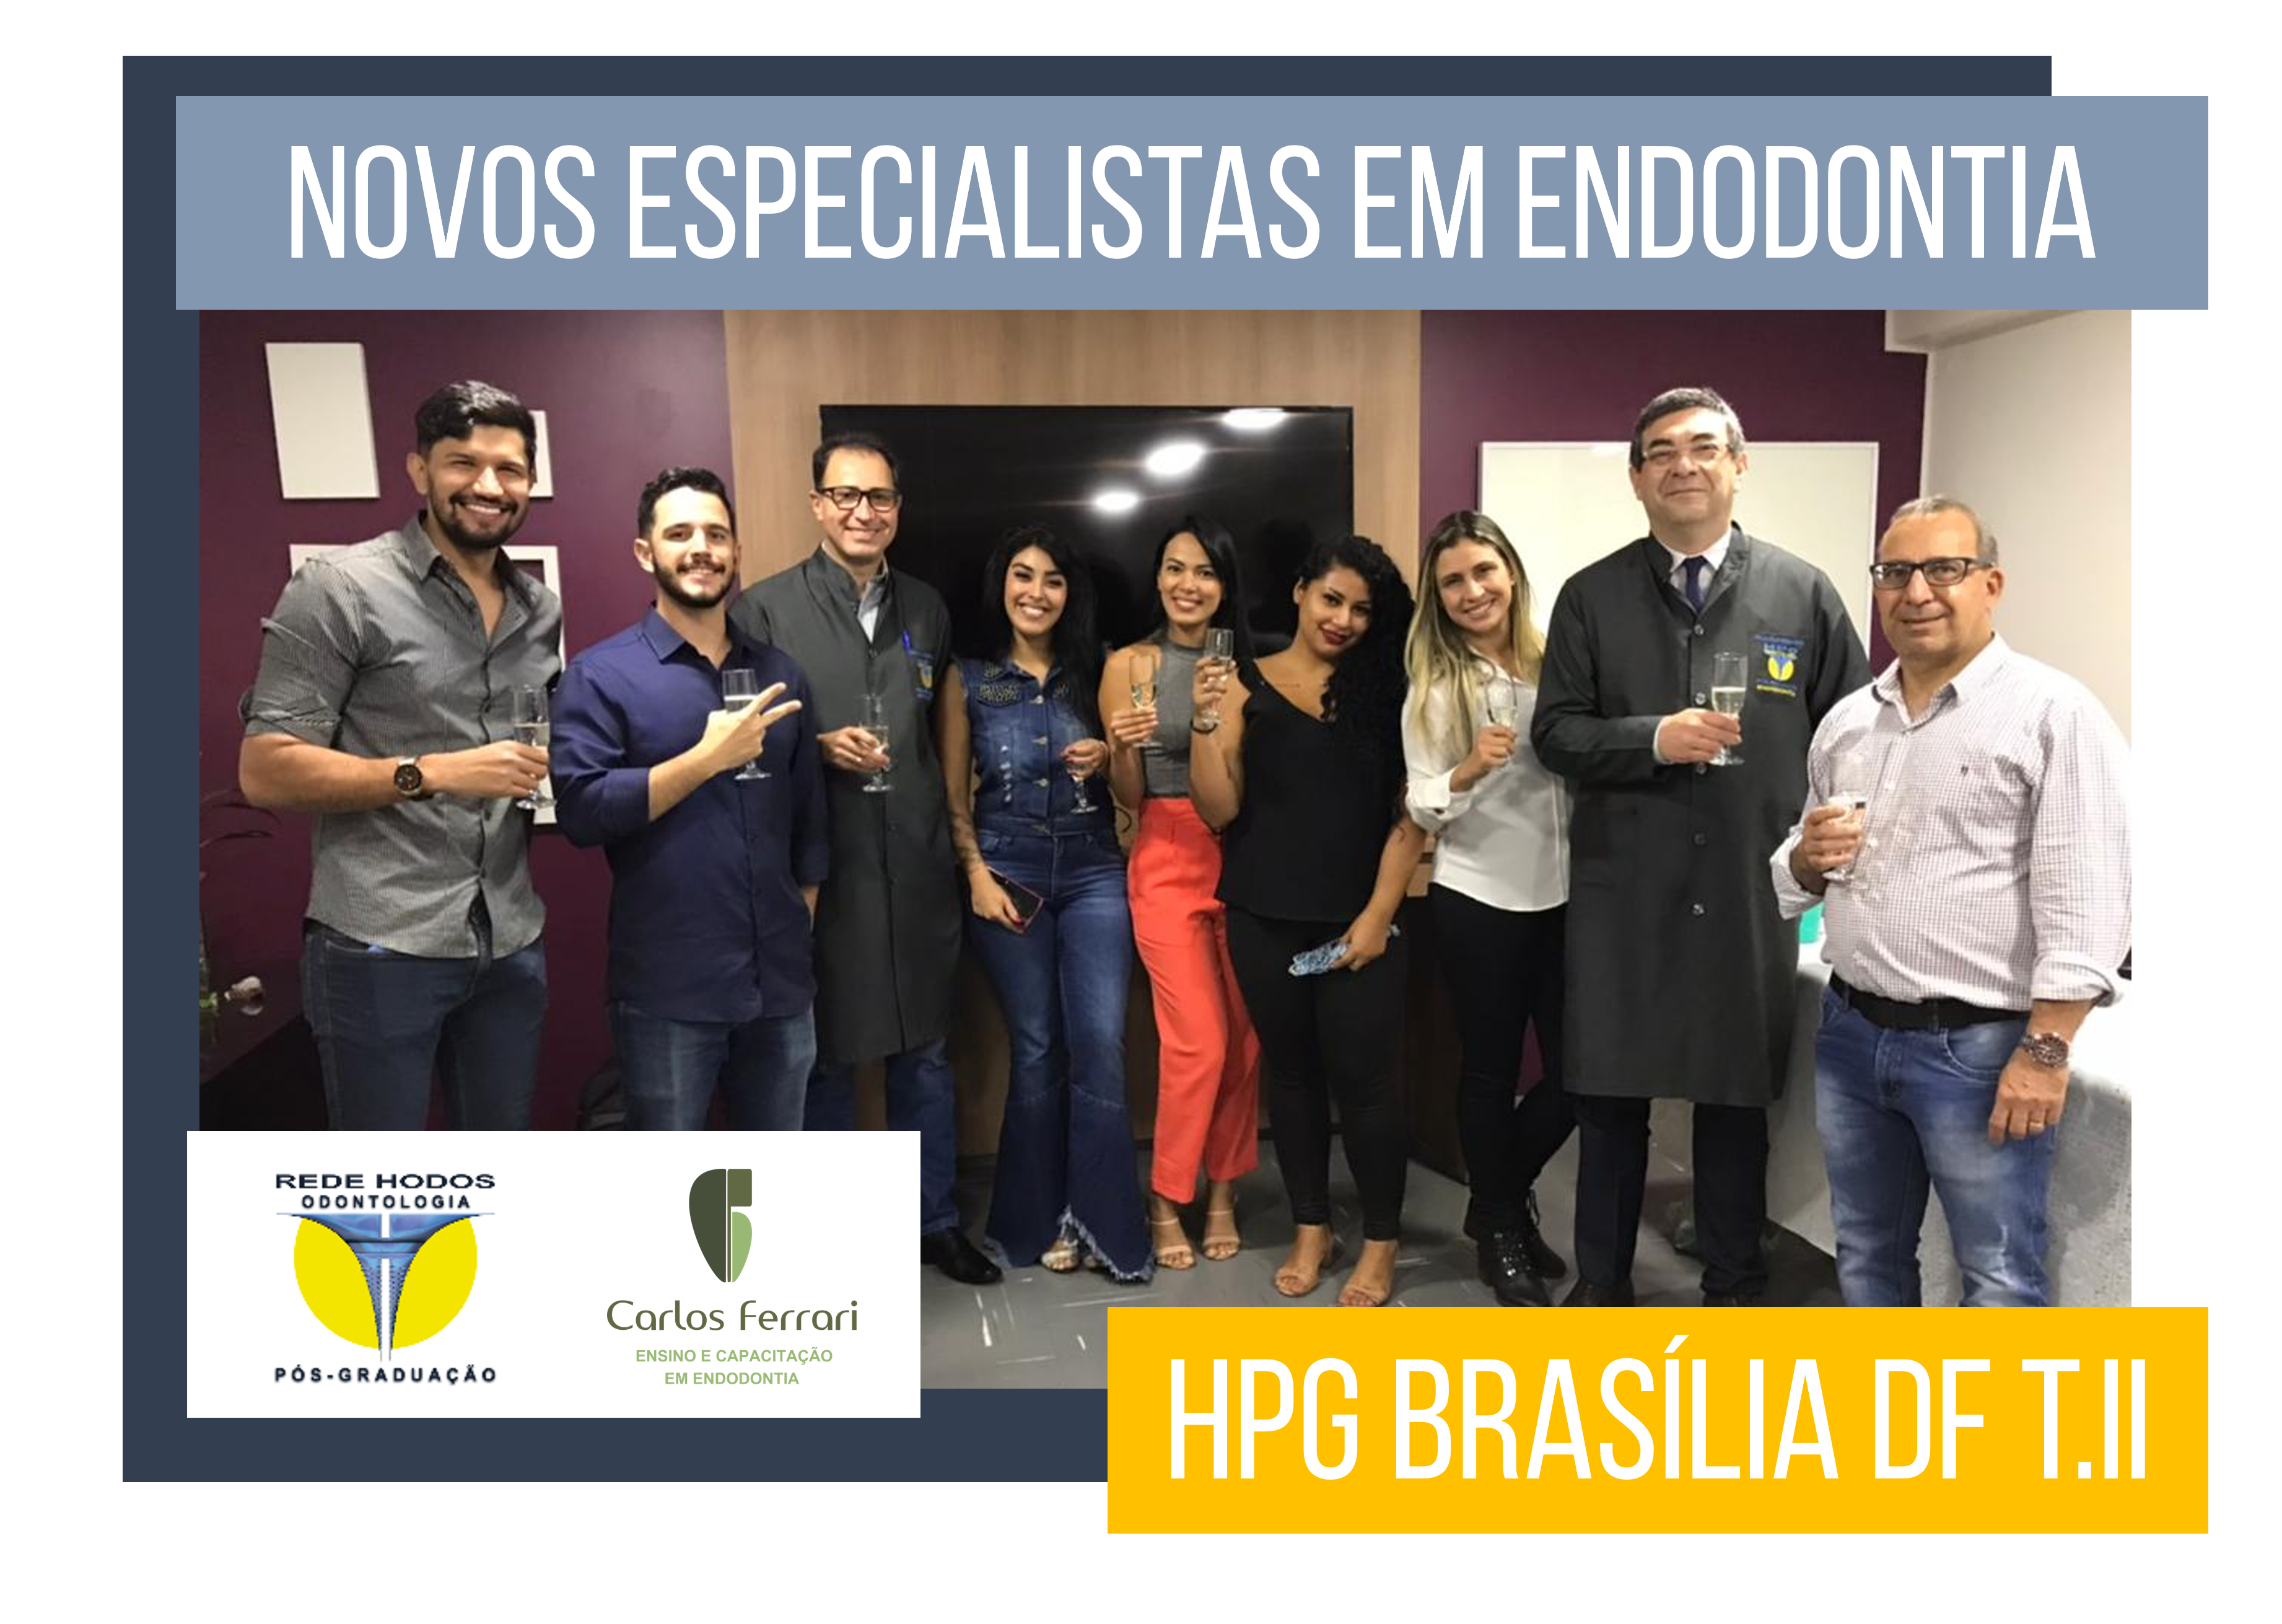 You are currently viewing Novos formados. Especialização em Endodontia HPG Brasília.